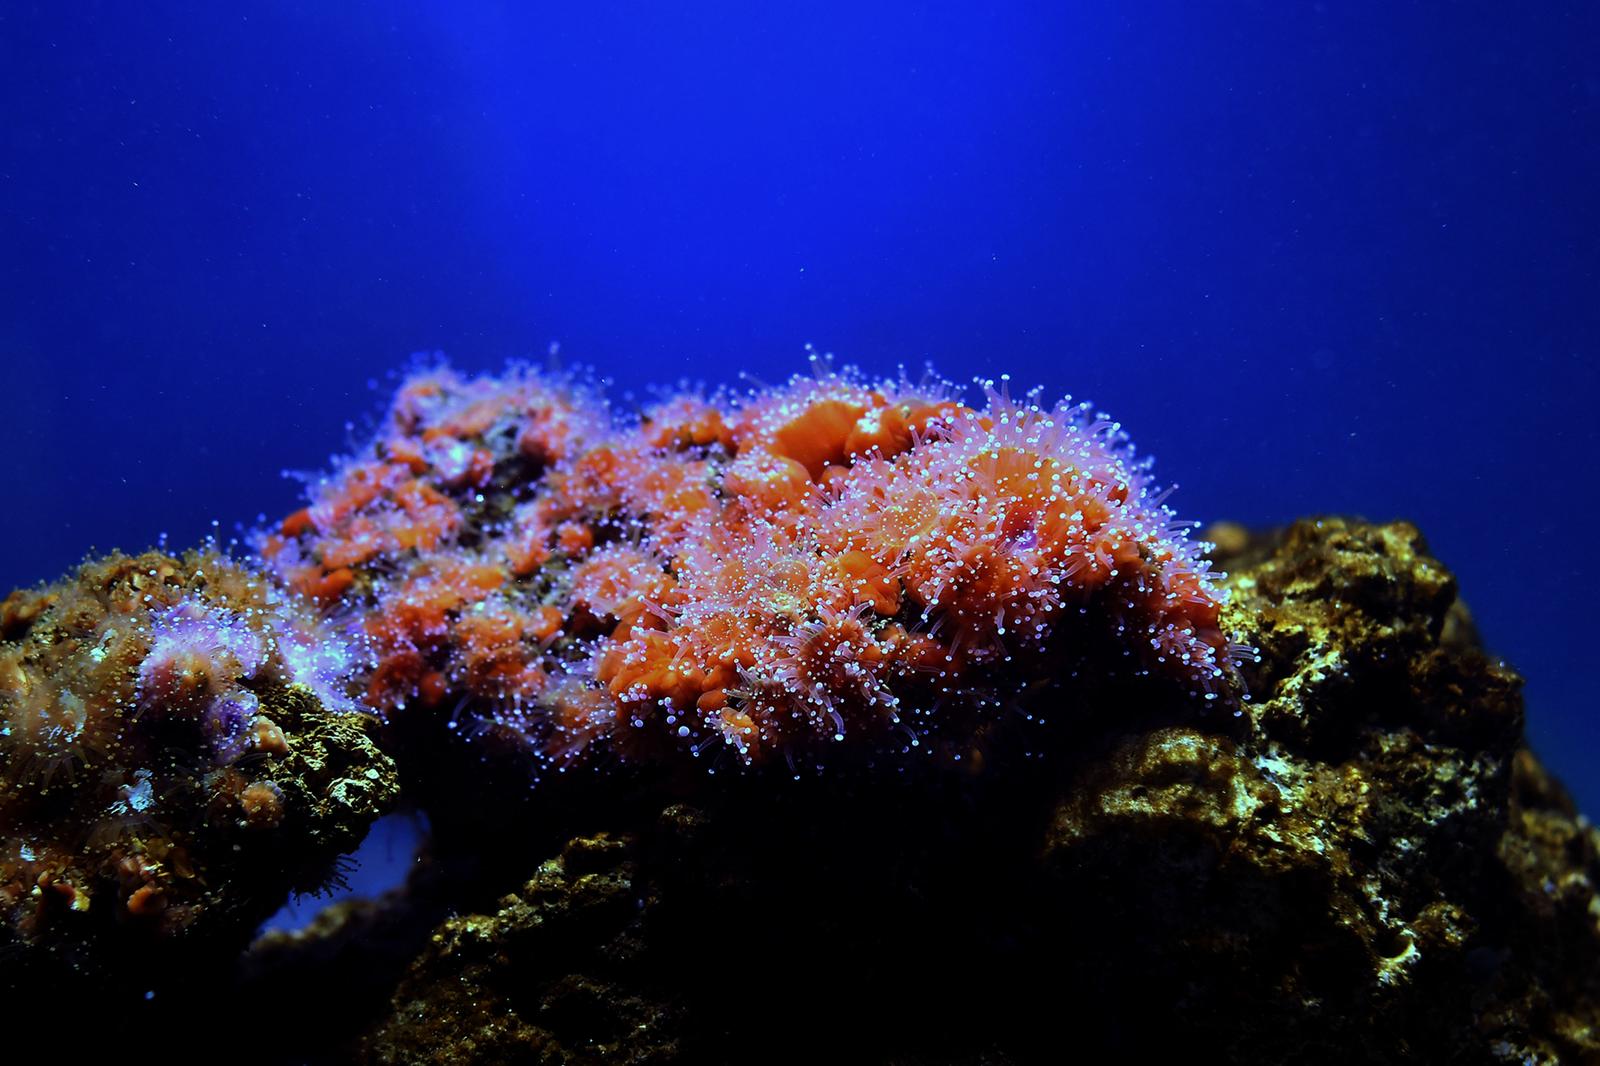 U Aqauariumu Pula otvorena je izložba koralja "Krhka ljepota"  18.12.2018., Pula - U Aqauariumu Pula otvorena je izlozba "Krhka ljepota" povodom obiljezavanja Medjunarodne godine koraljnih grebena i 58. rodjendana Nacionalnog parka Mljet.rPhoto: Dusko Marusic/PIXSELL